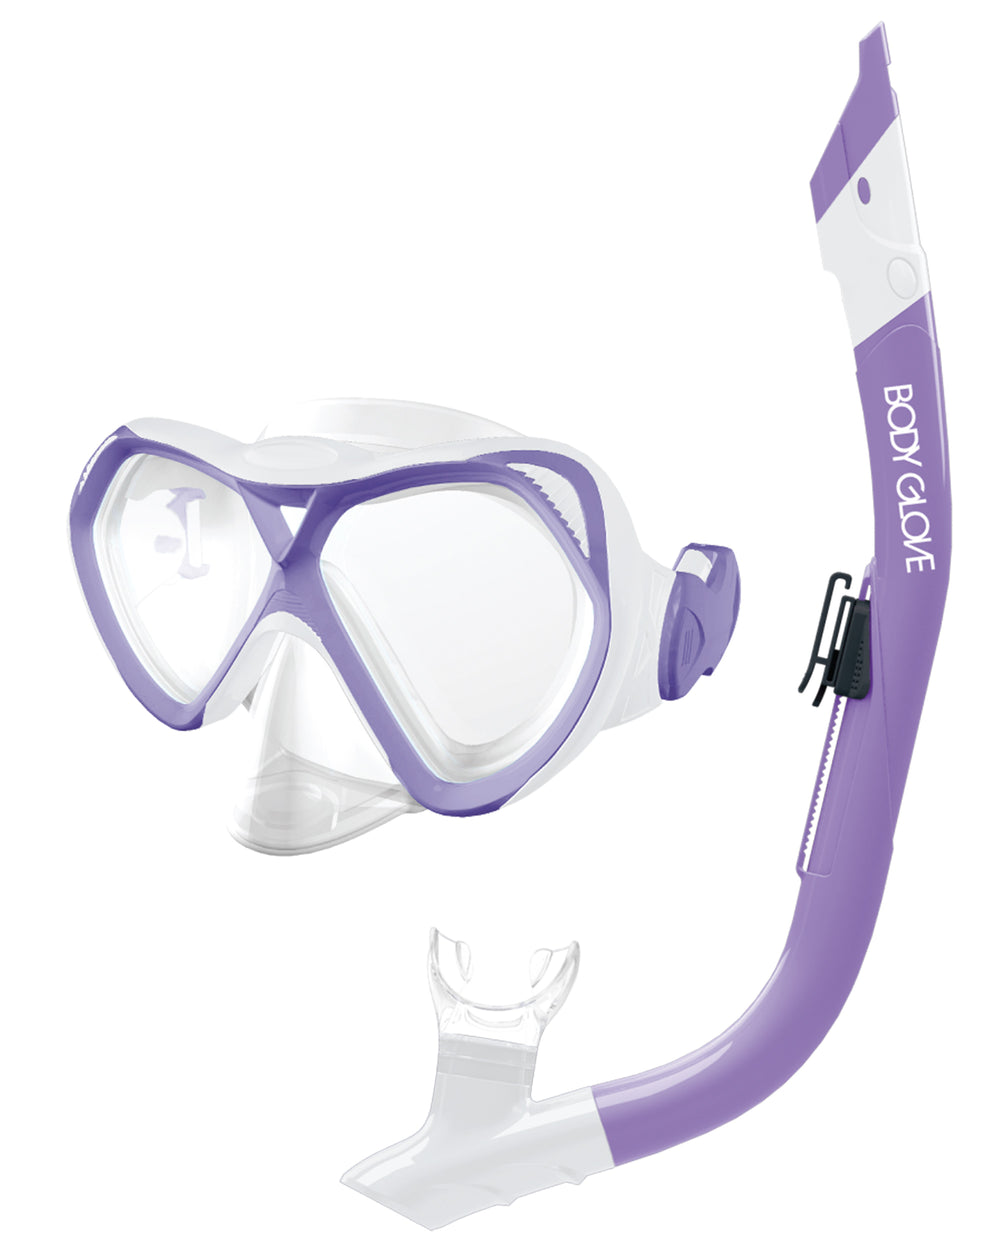 Cove Mask / Snorkel Combo - Purple/White